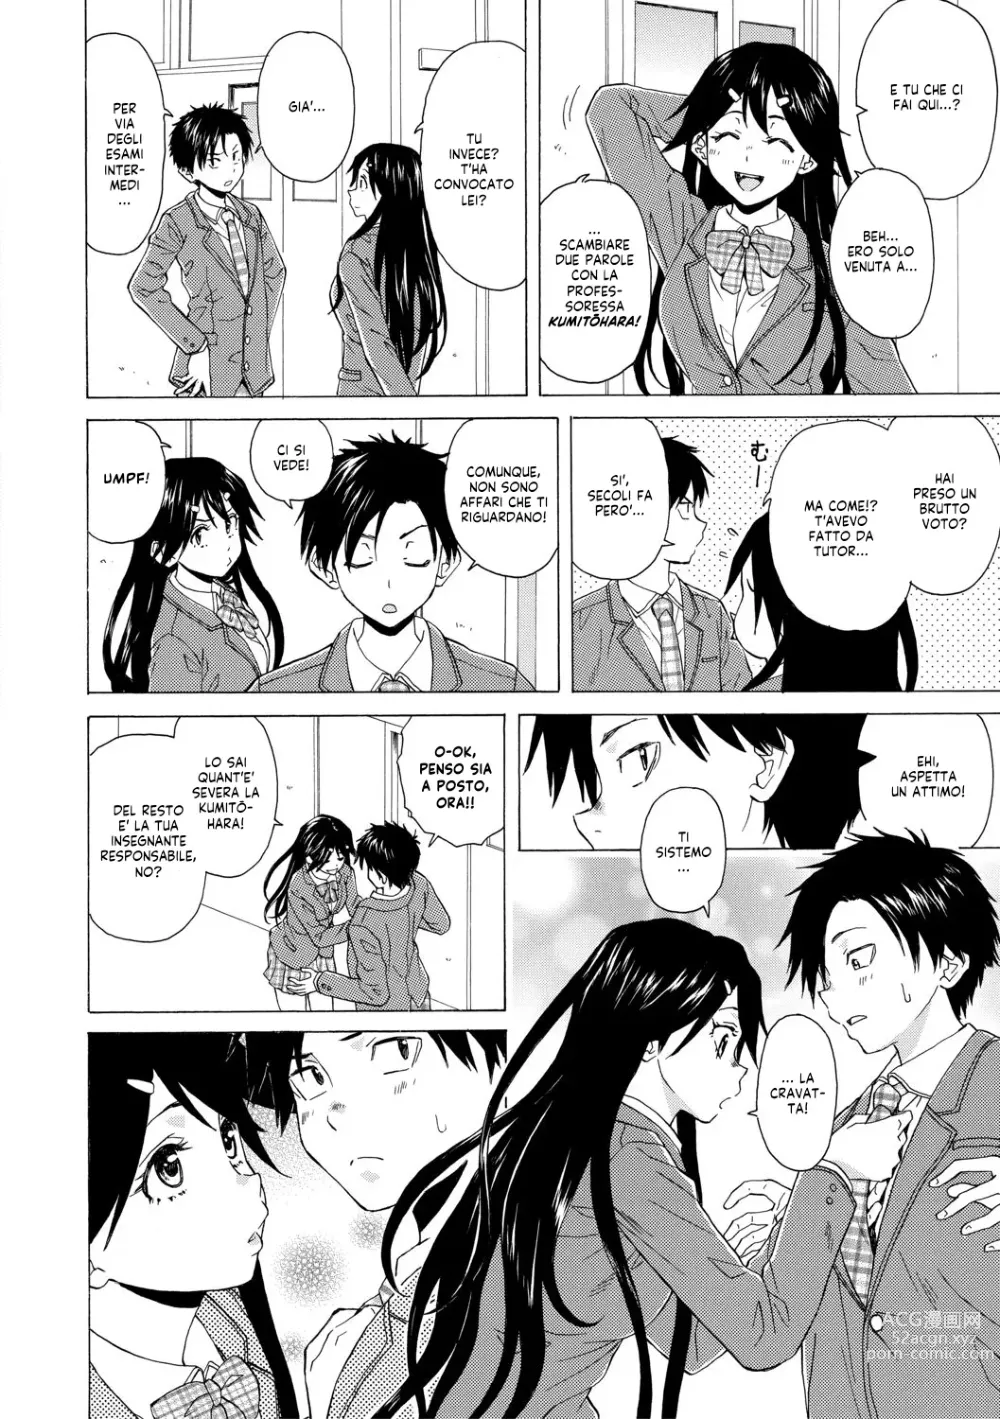 Page 8 of manga Una Professoressa Escort in Camera Mia